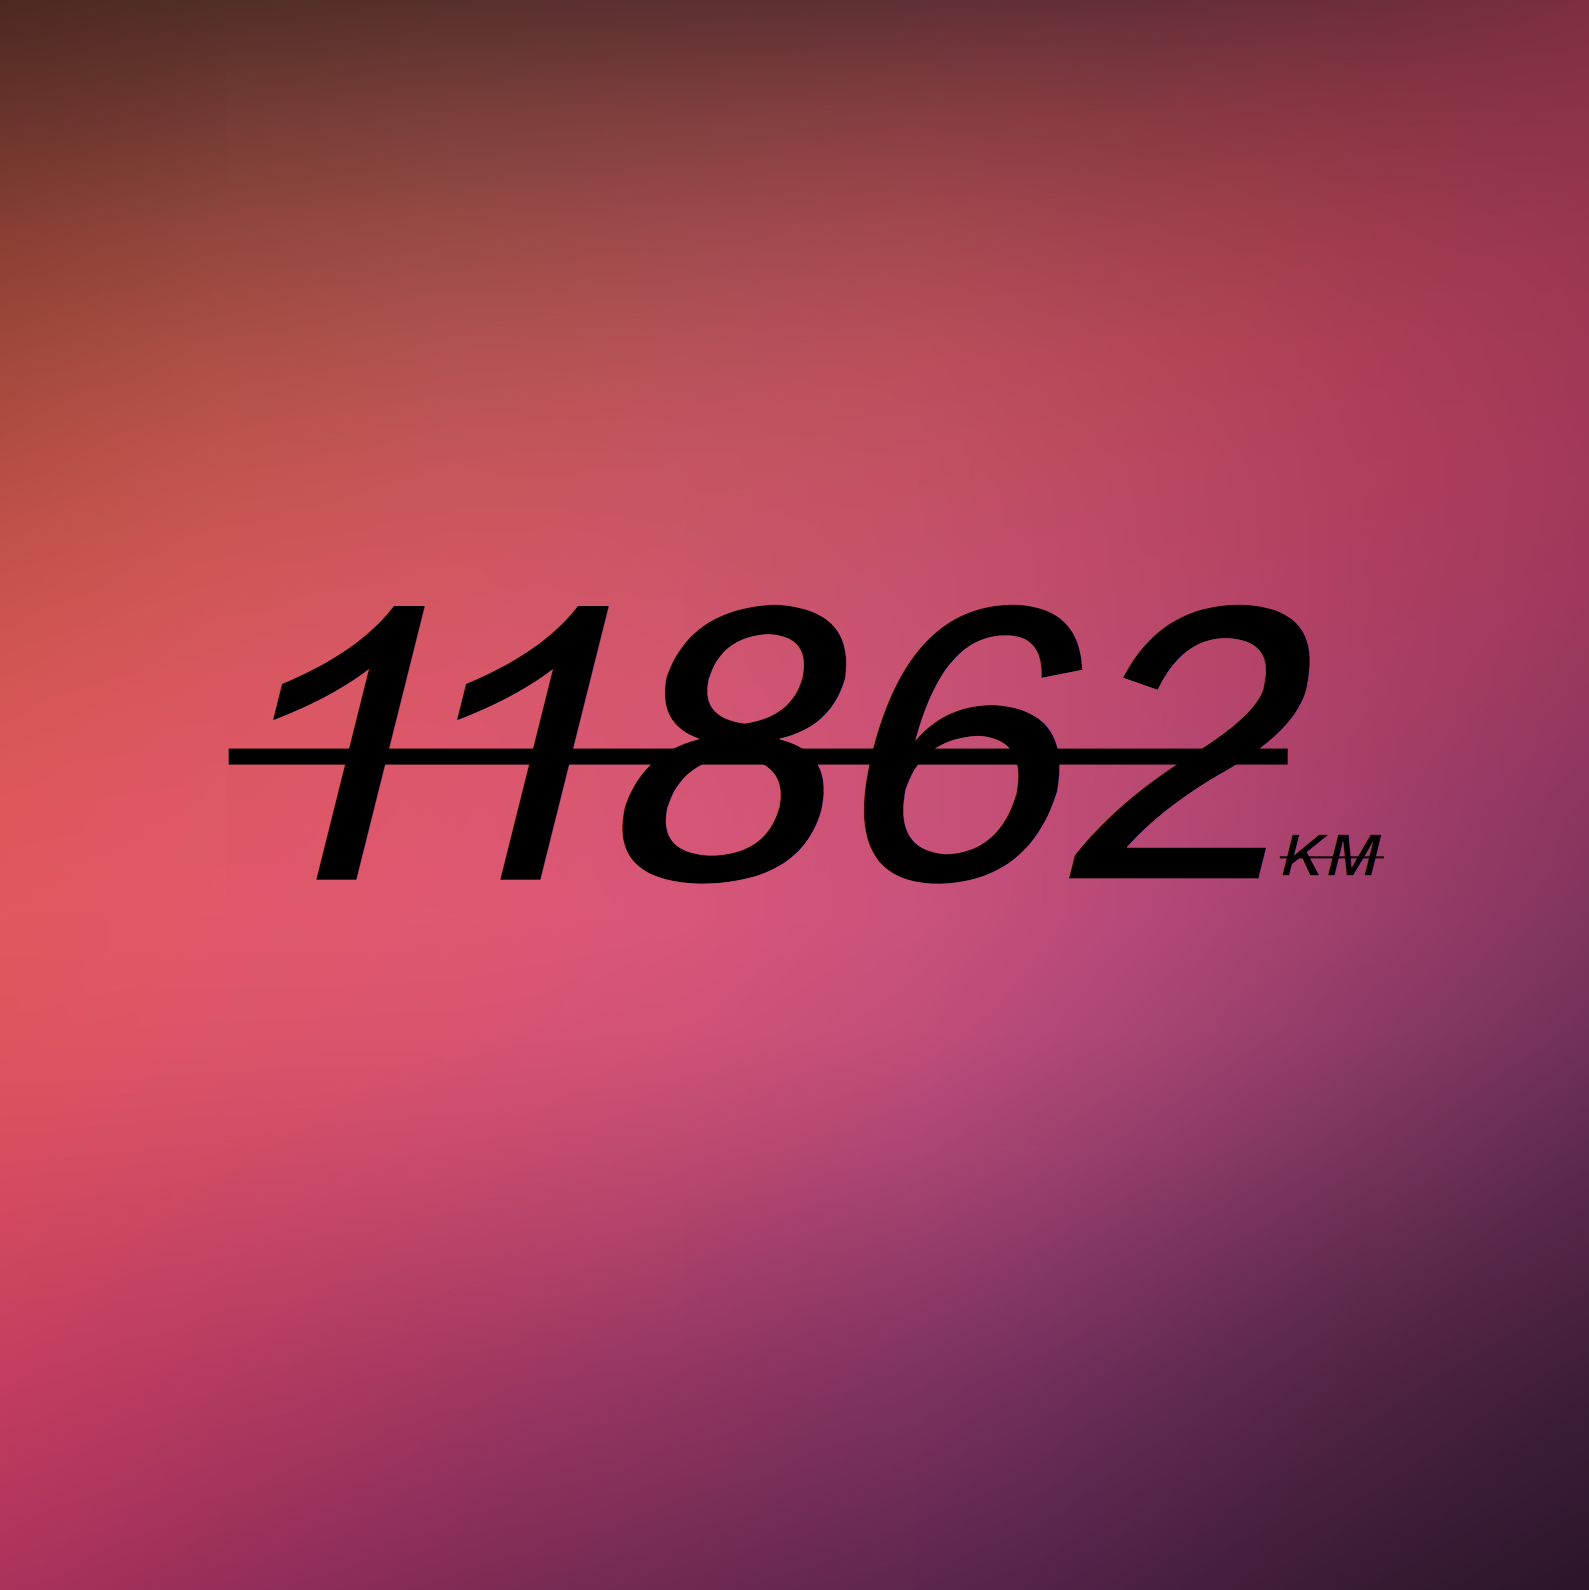 11862